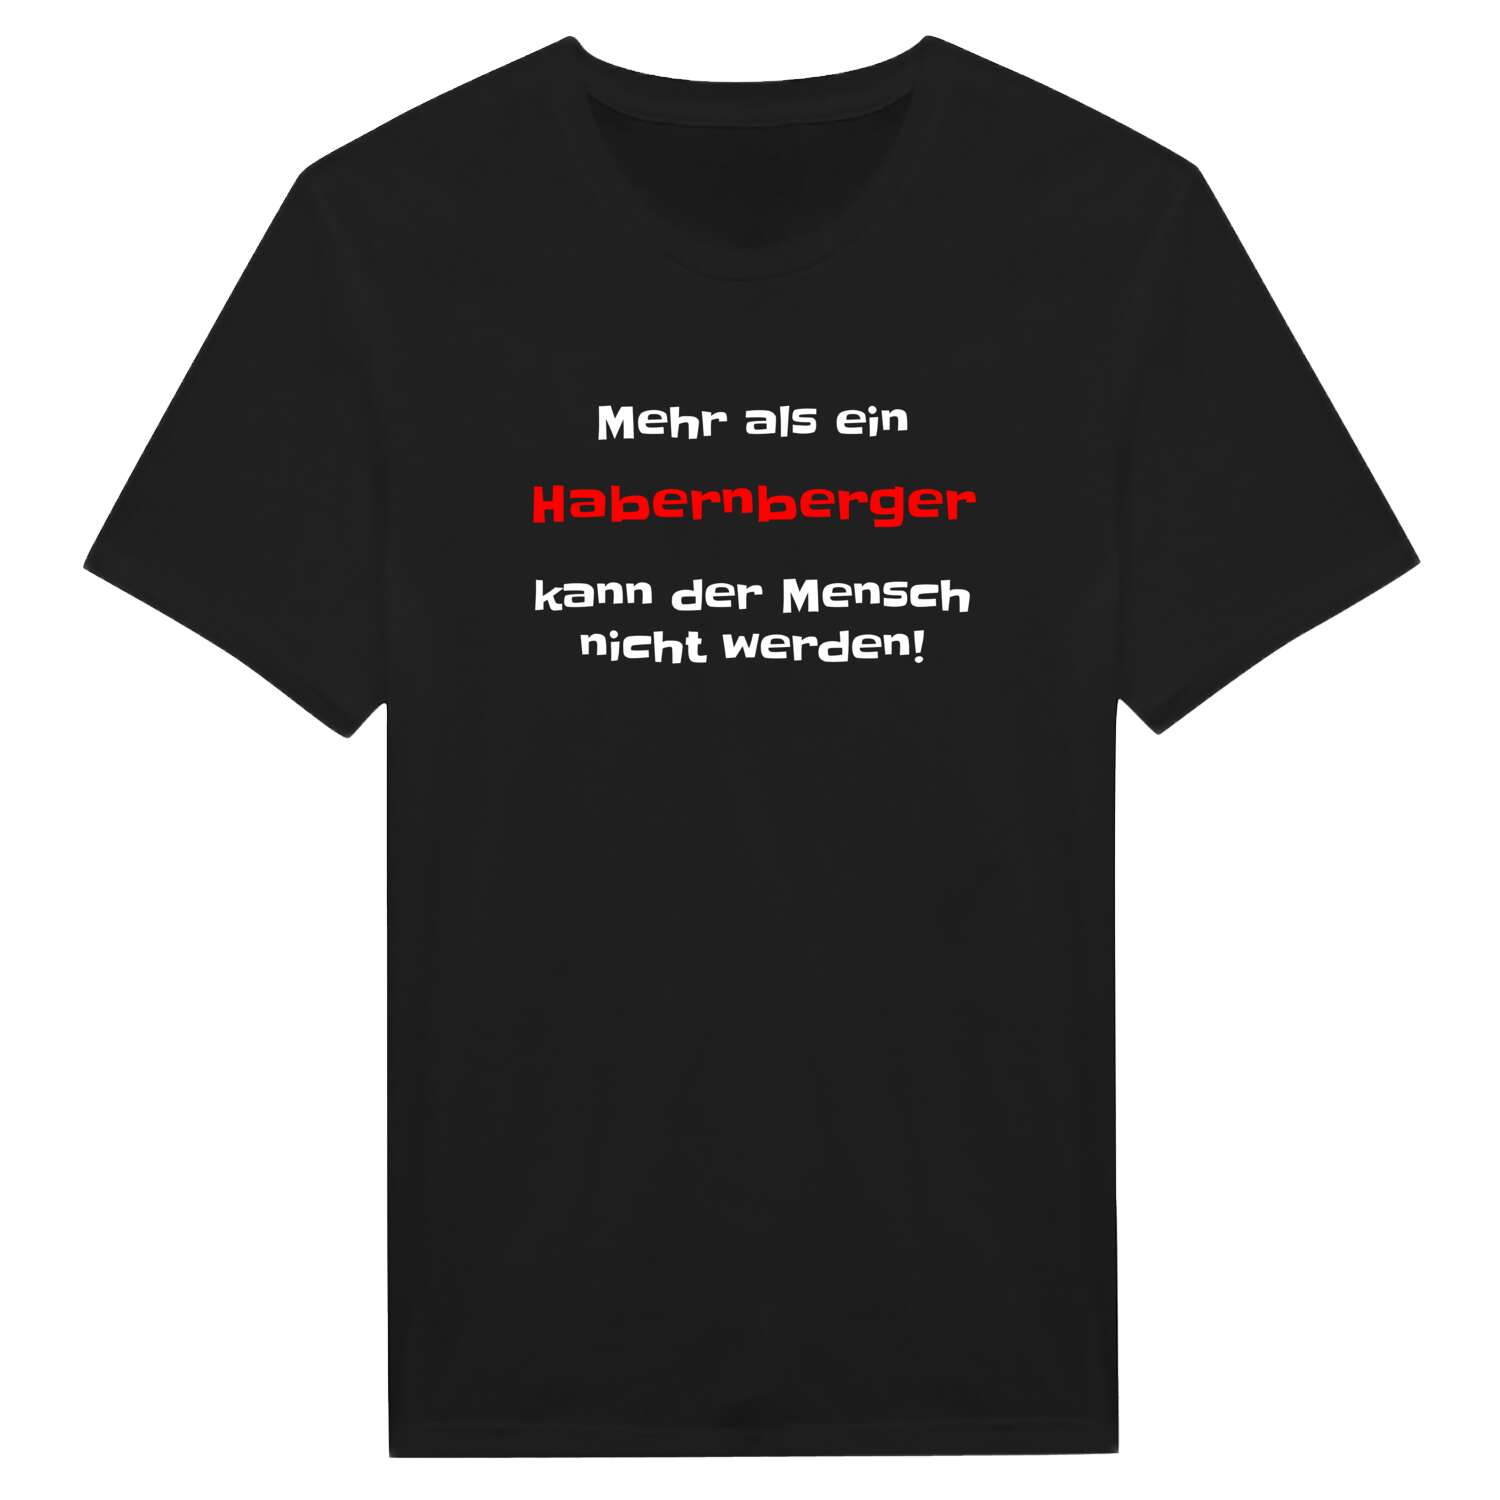 Habernberg T-Shirt »Mehr als ein«